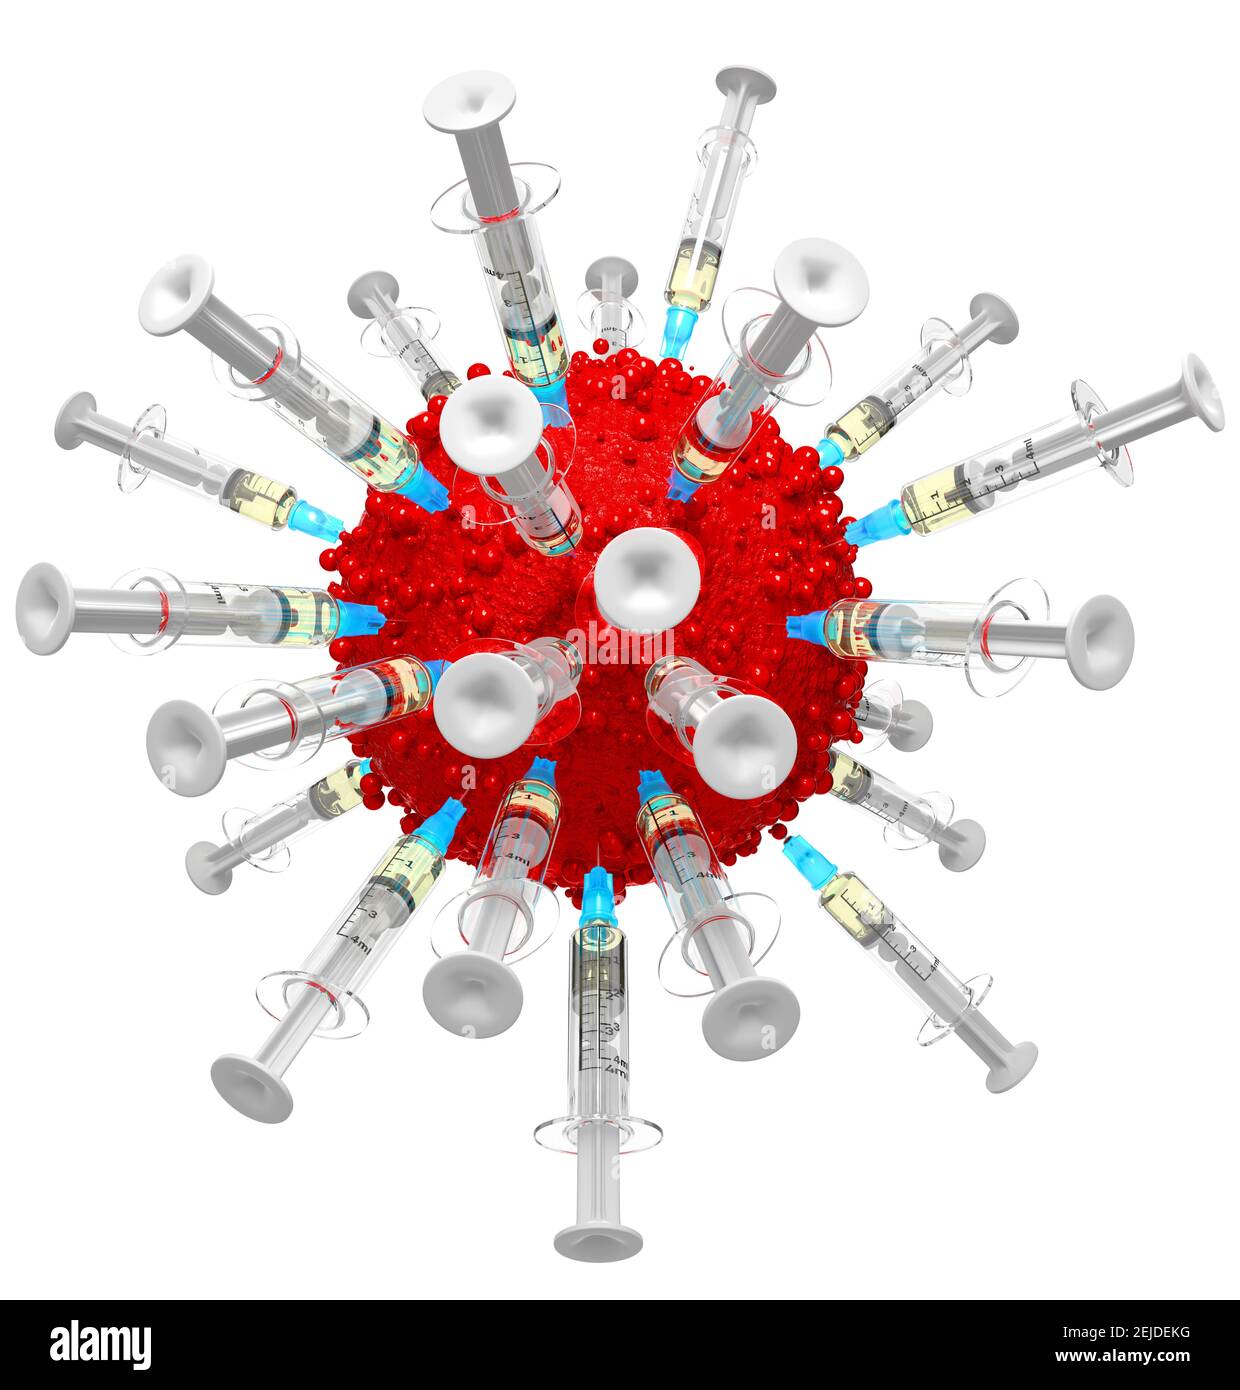 Vaccin contre le coronavirus. Un virus est attaqué par des seringues contenant les vaccins COVID-19. Fond blanc, découpé. Combattre le virus. Banque D'Images